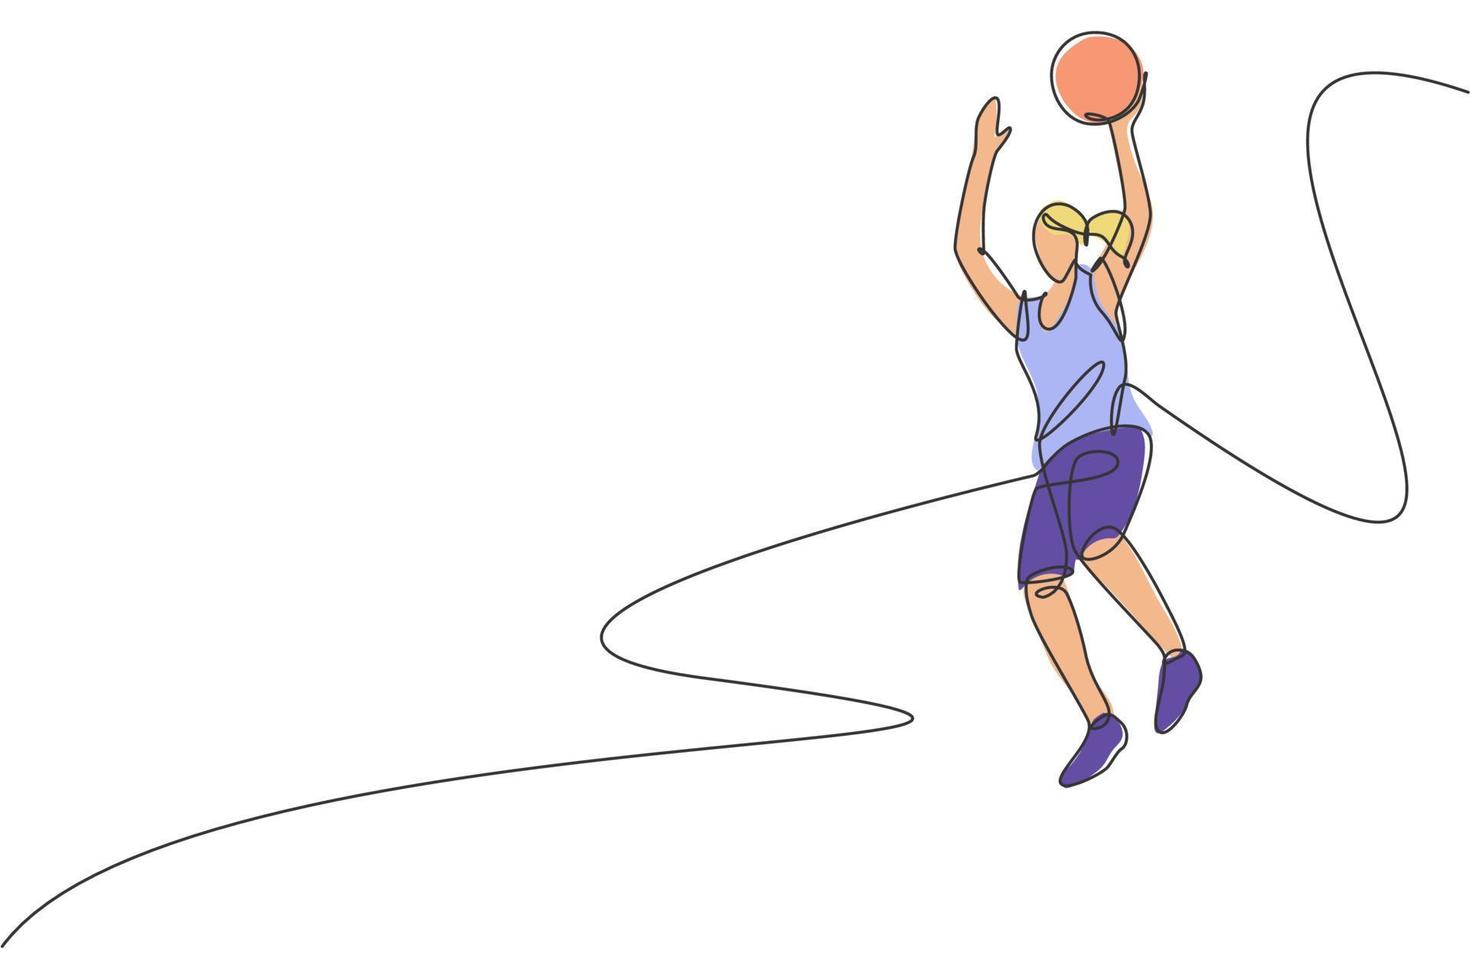 disegno a linea continua singola di una giovane giocatrice di basket in buona salute che salta. concetto di sport competitivo. illustrazione vettoriale alla moda di una linea di disegno per i media di promozione di tornei di basket